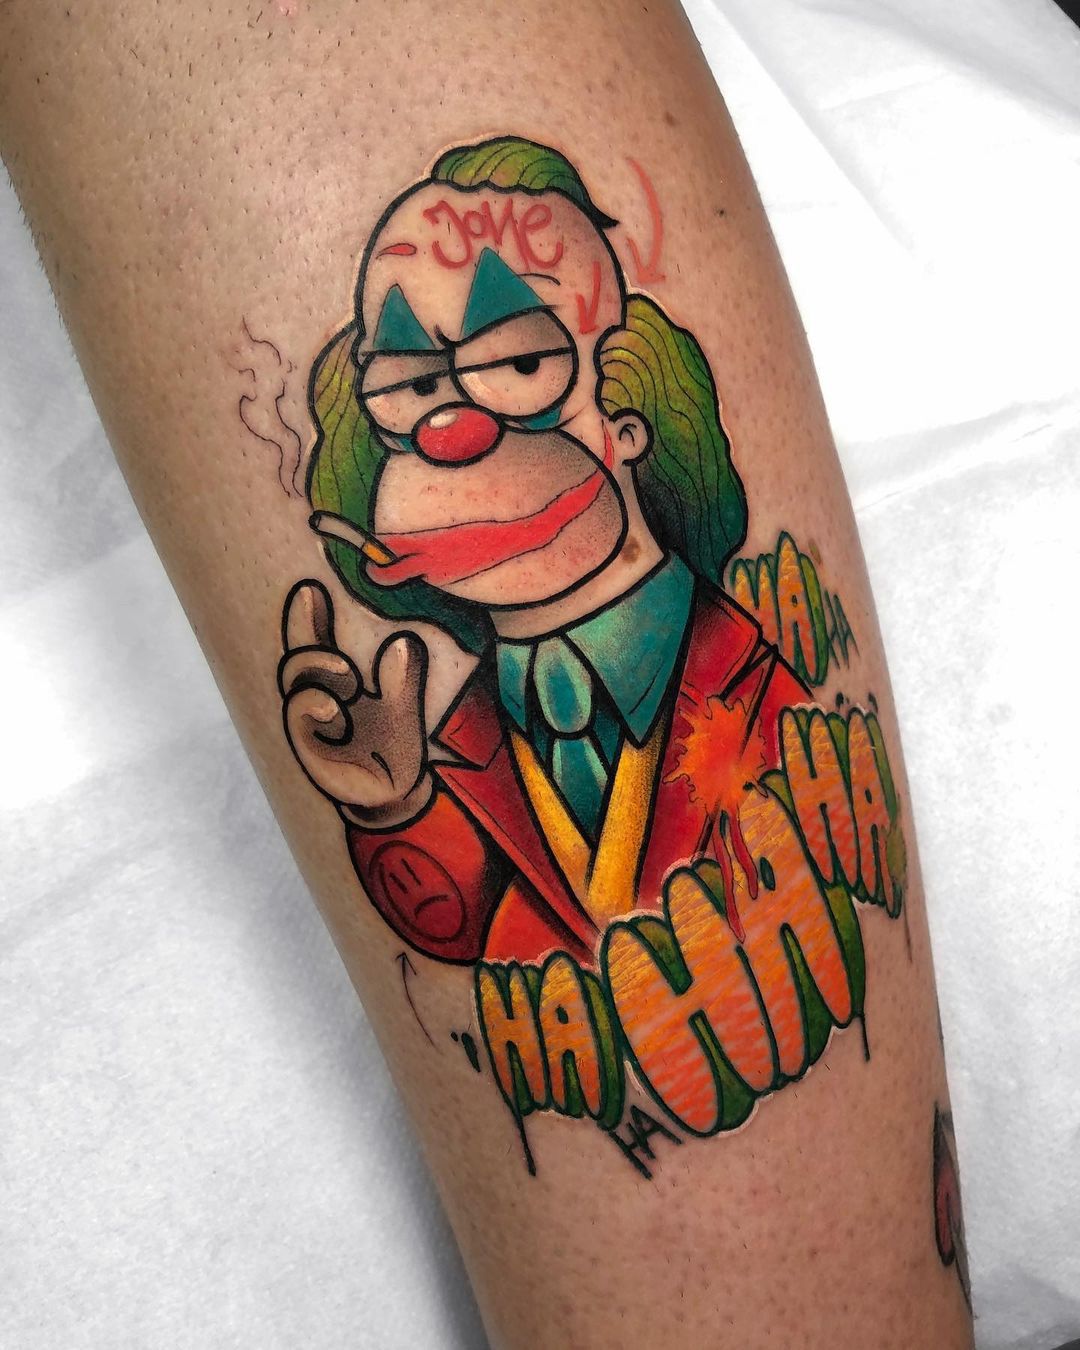 Krusty the Clown Joker - tattoo